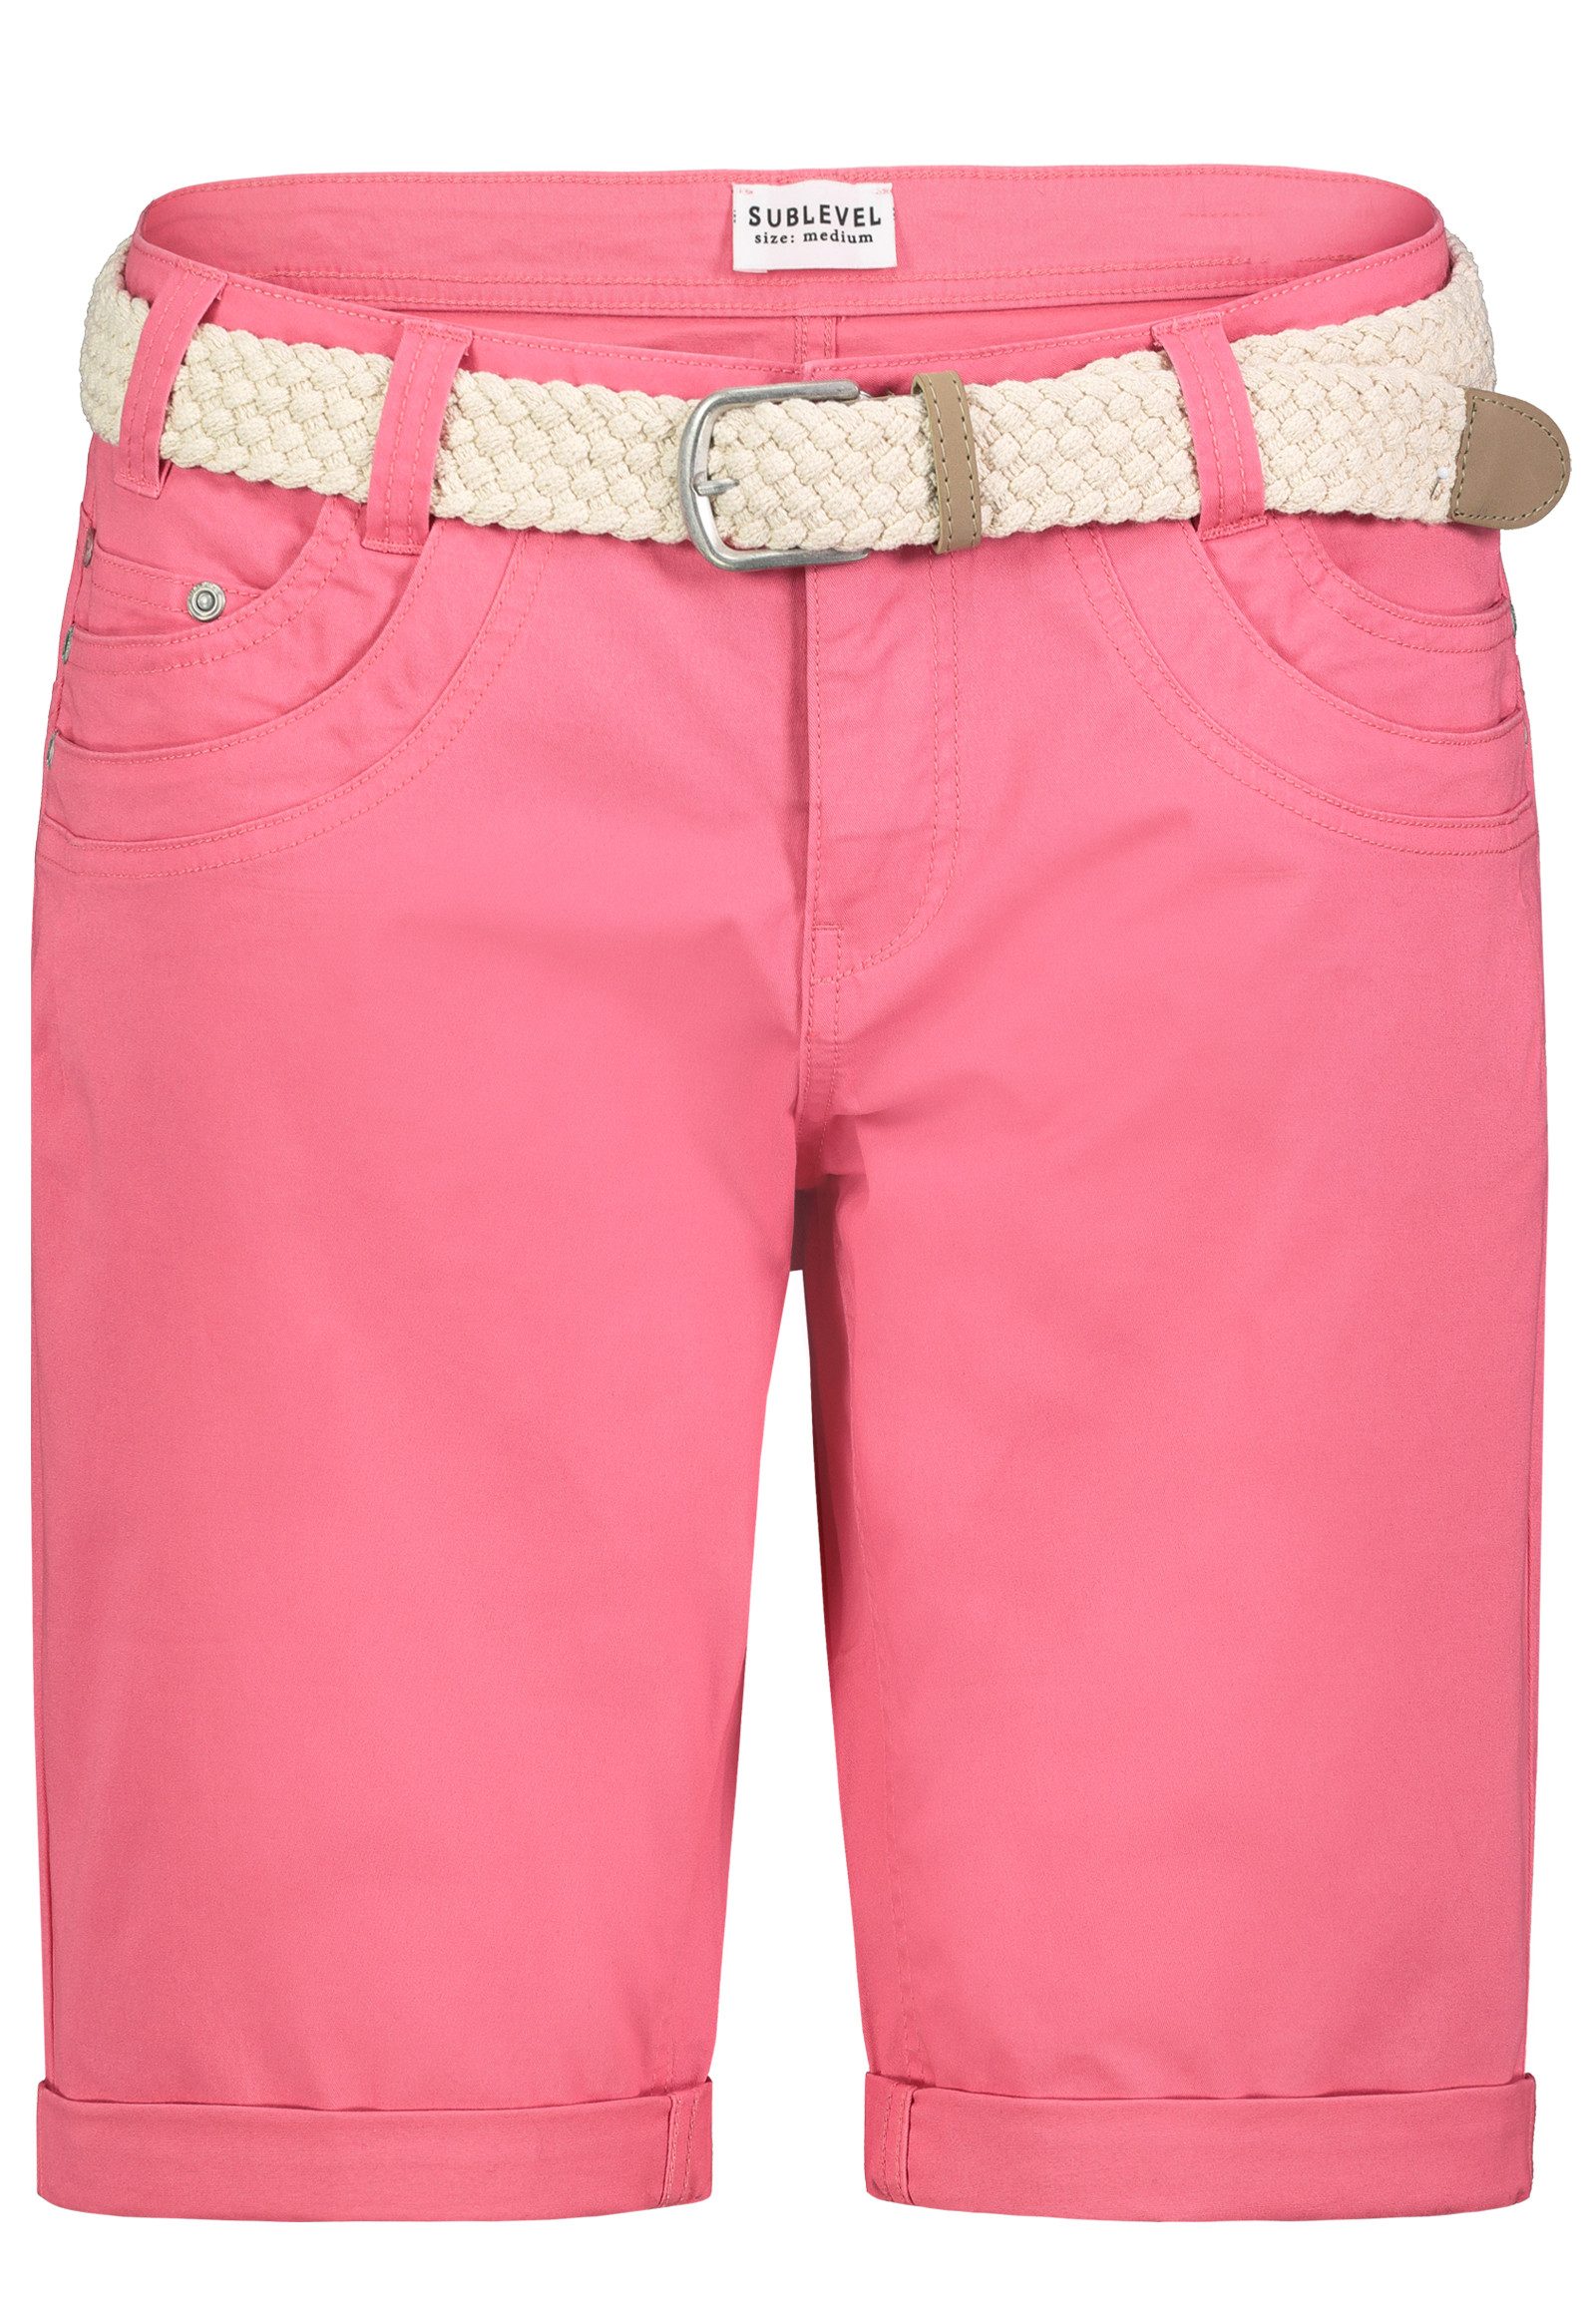 SUBLEVEL Shorts Damen Bermudas kurze Hose Baumwolle Jeans Sommer Chino Stoff flex, bequem, elastisch, mit Gürtel